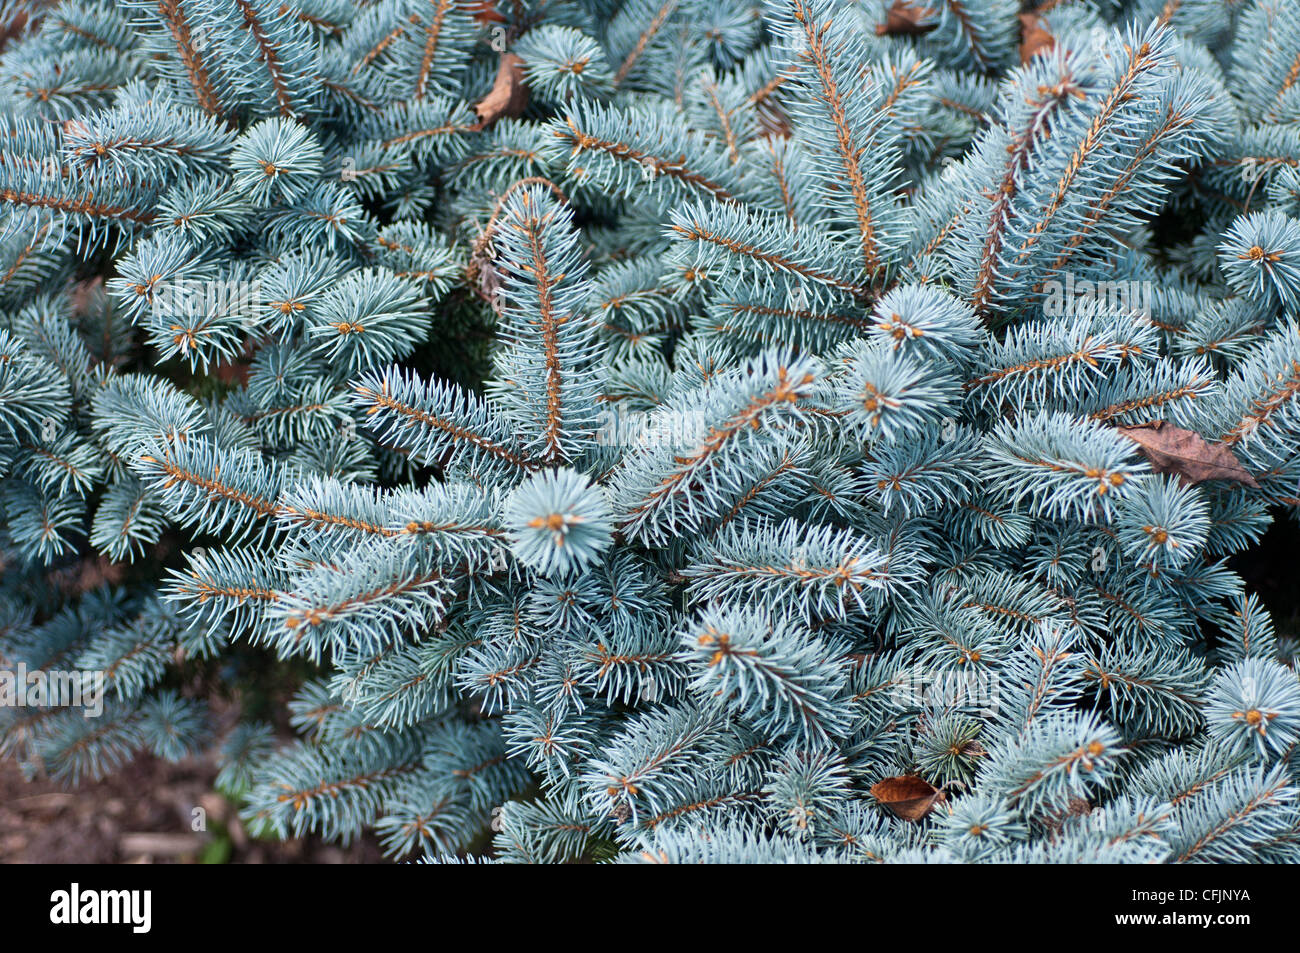 Silber Blau Koniferen von Kolorado-Fichte, Picea Pungens f Glauca Var Montgomery Stockfoto